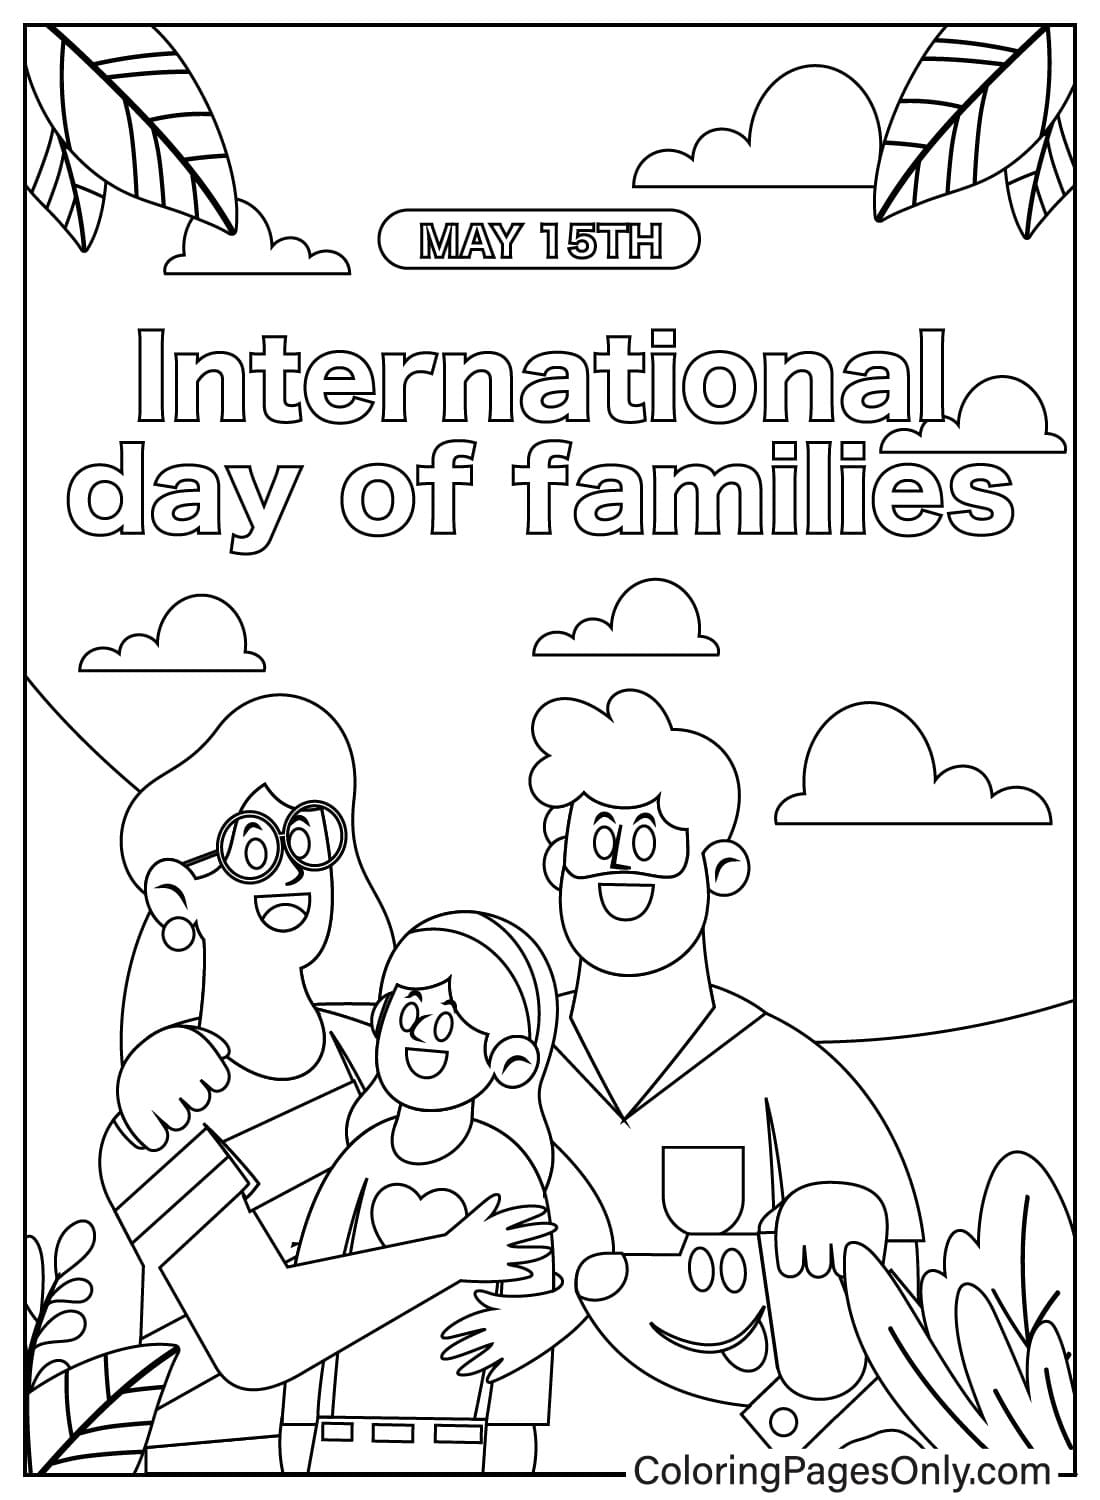 Página para colorear del Día Internacional de las Familias del Día de la Familia